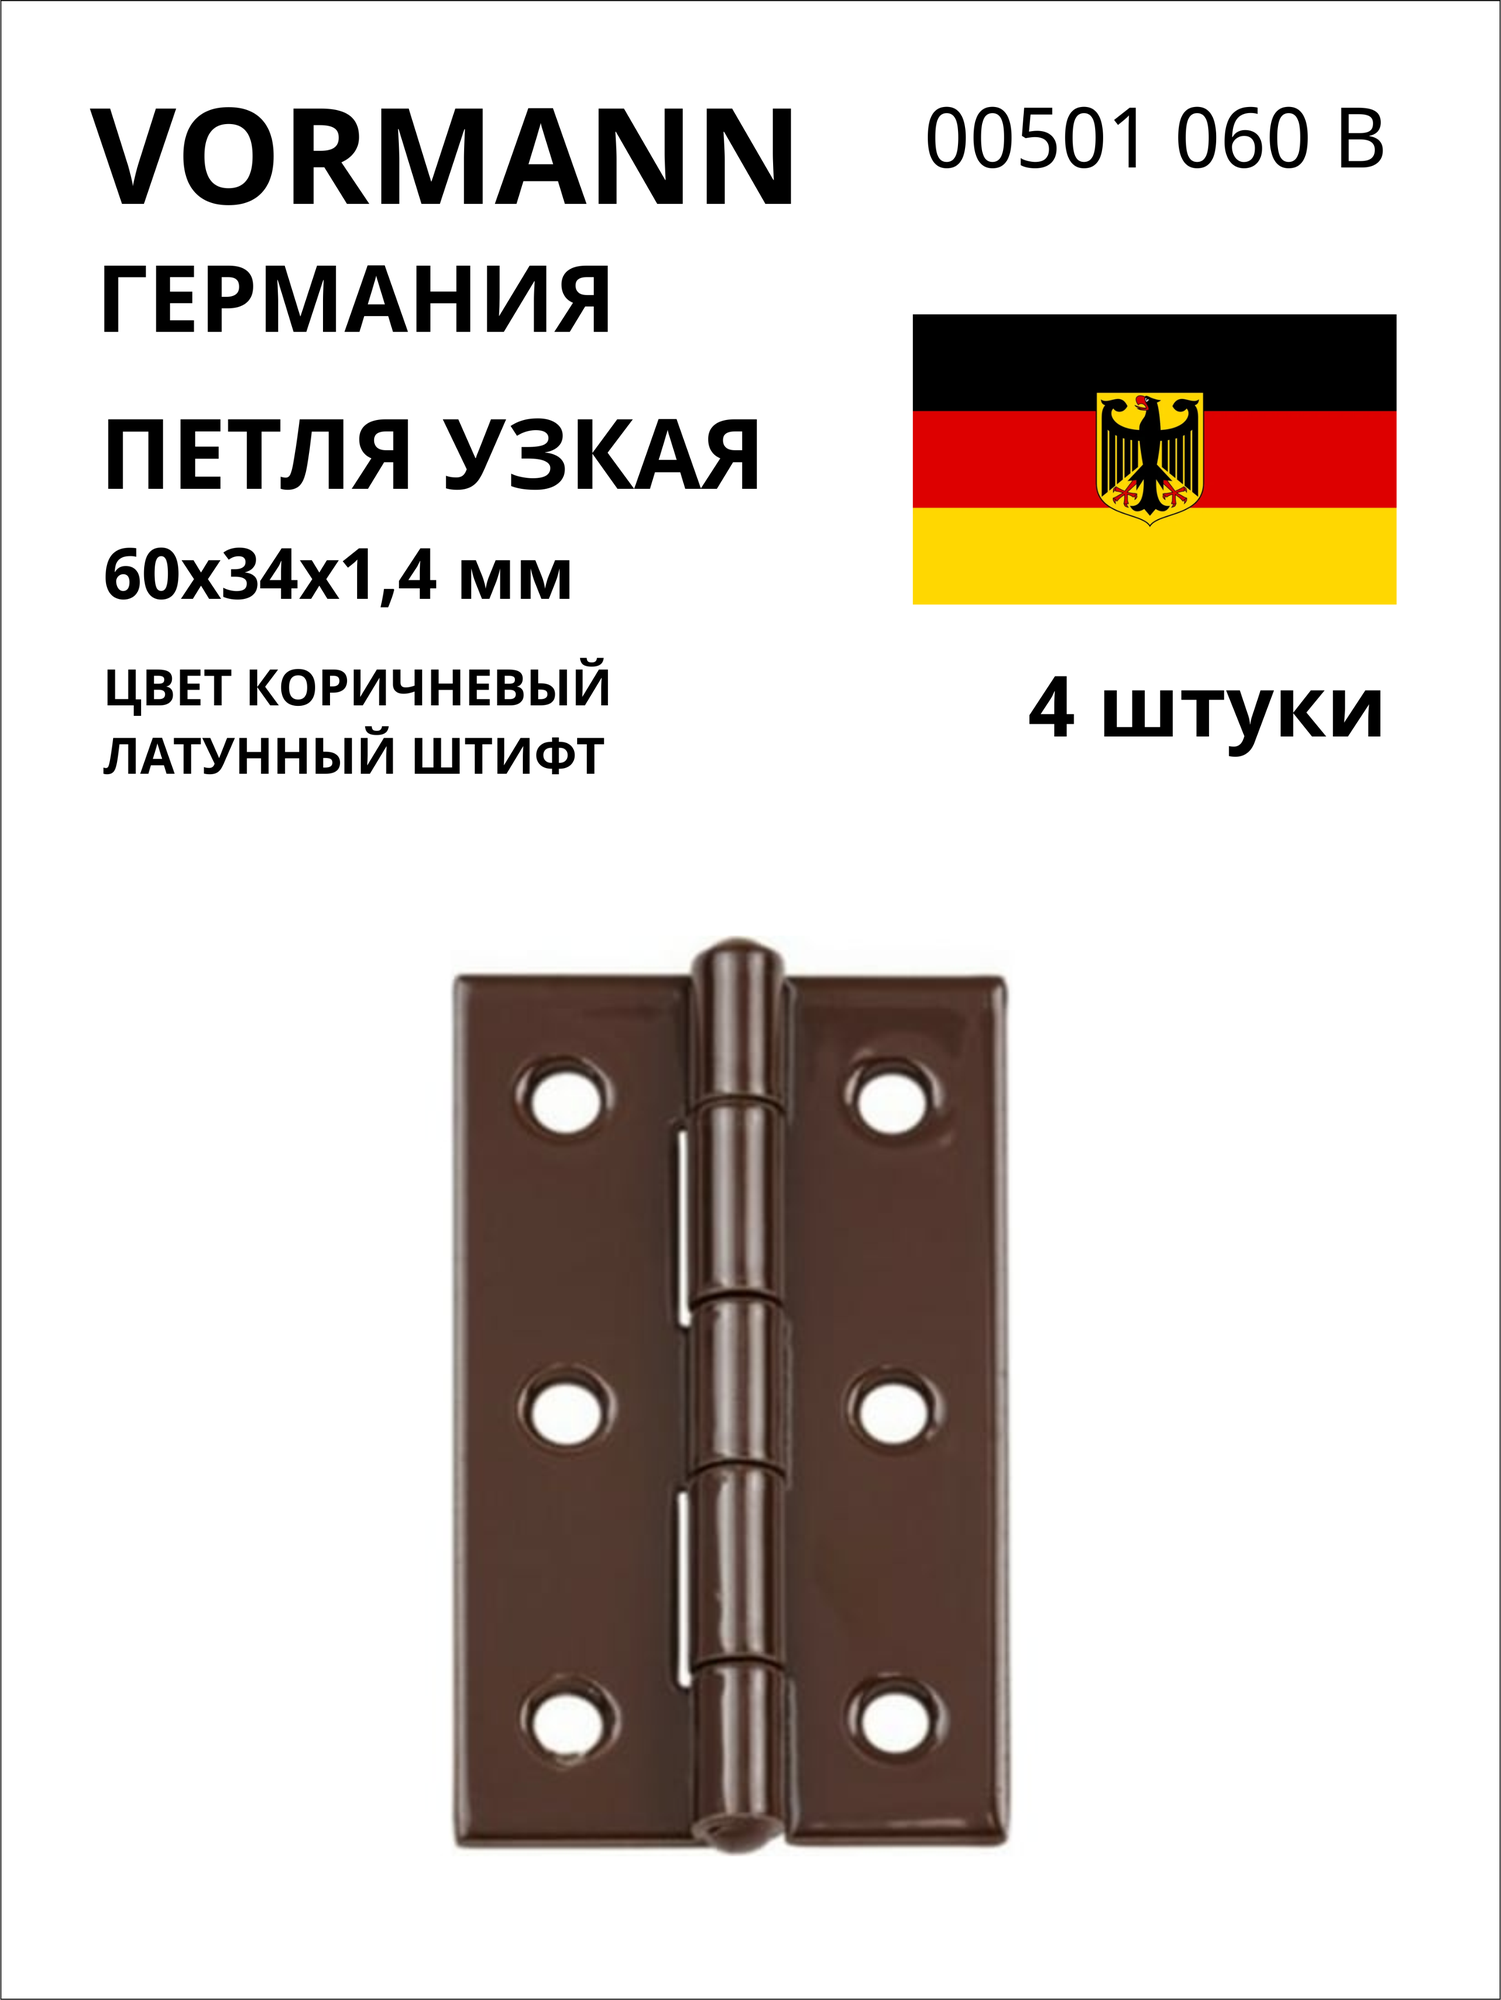 Петля VORMANN узкая, 60х34х1,4 мм, оцинкованная, латунный штифт, цвет: коричневый 00501 060 B, 4 шт.